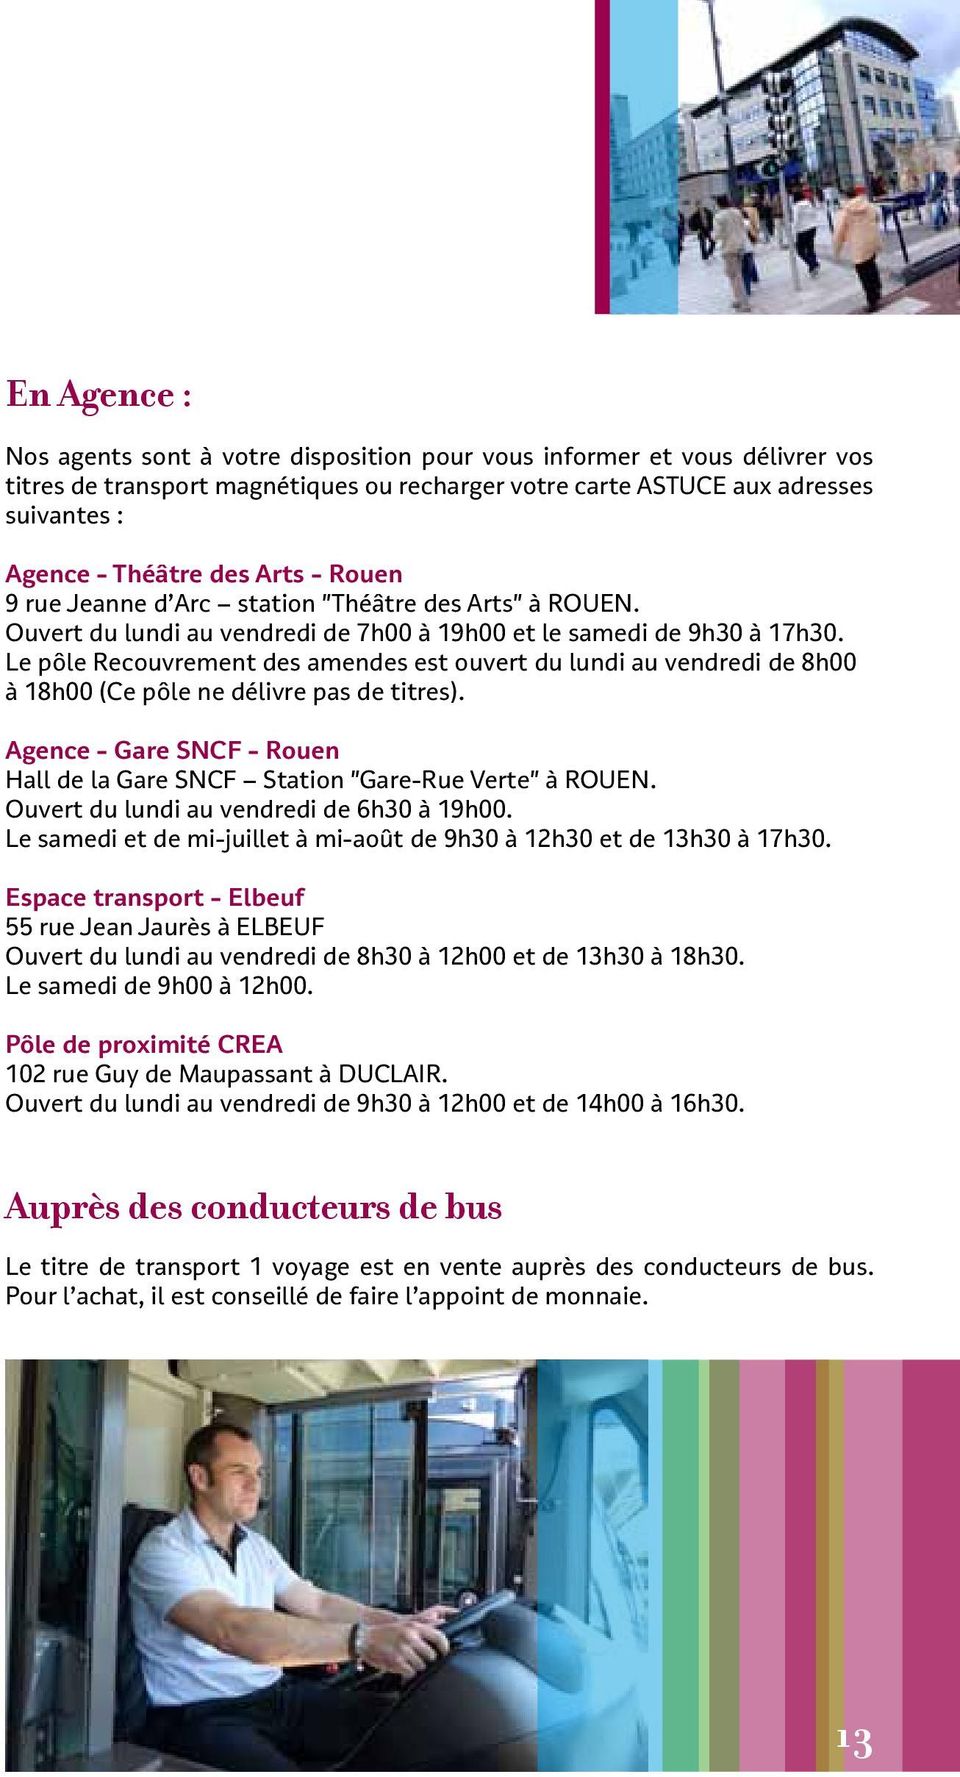 Le pôle Recouvrement des amendes est ouvert du lundi au vendredi de 8h00 à 18h00 (Ce pôle ne délivre pas de titres). Agence - Gare SNCF - Rouen Hall de la Gare SNCF Station "Gare-Rue Verte" à ROUEN.